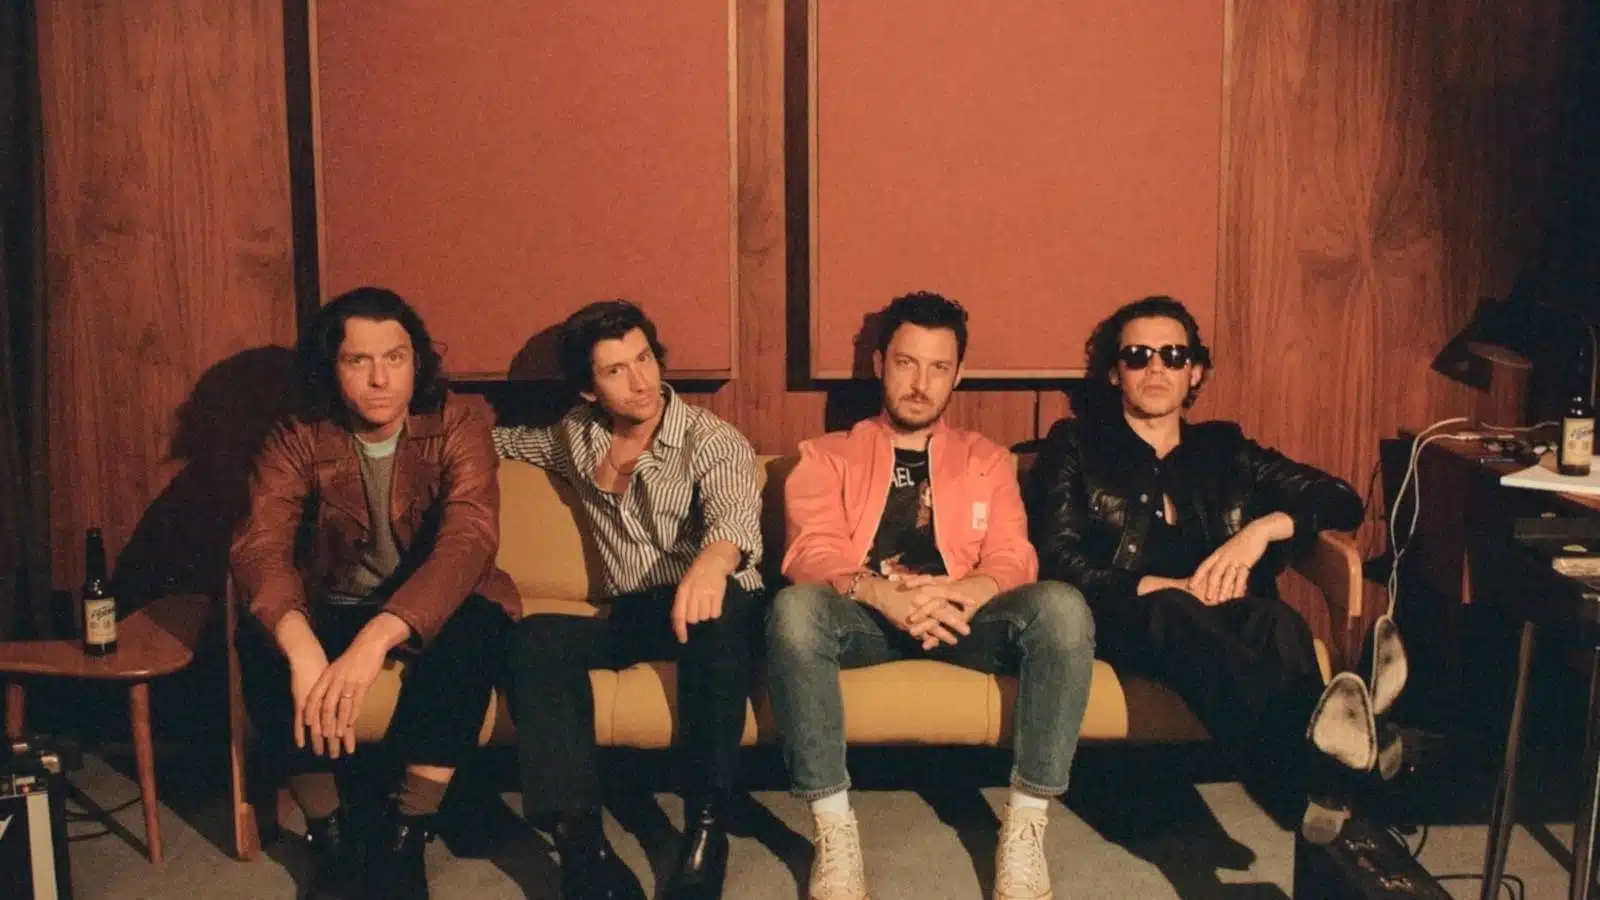 Arctic Monkeys Songs Ranked